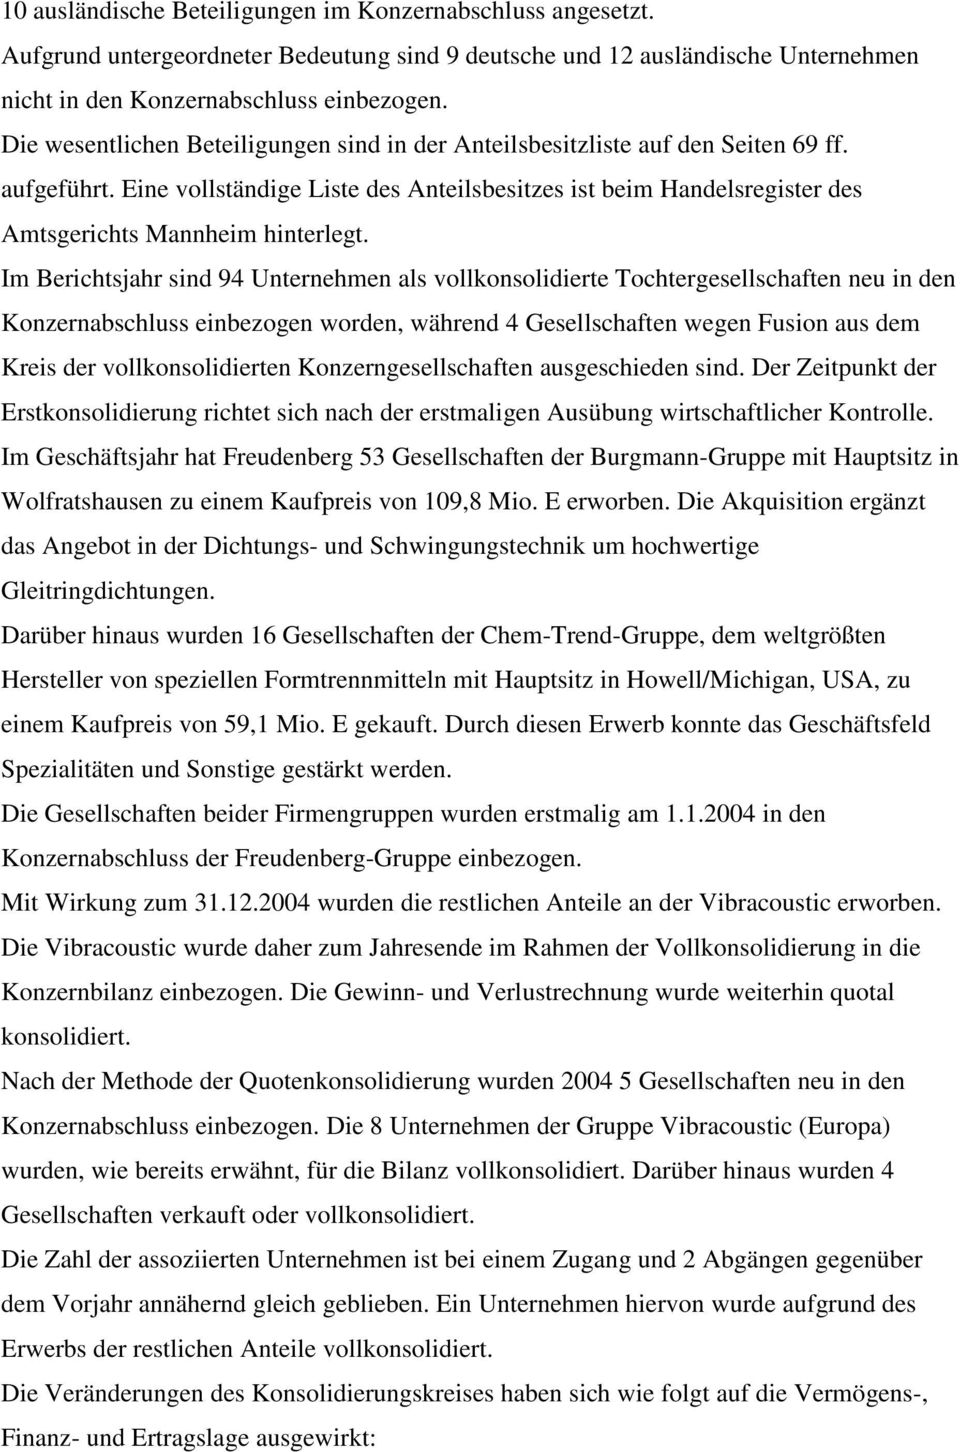 Eine vollständige Liste des Anteilsbesitzes ist beim Handelsregister des Amtsgerichts Mannheim hinterlegt.